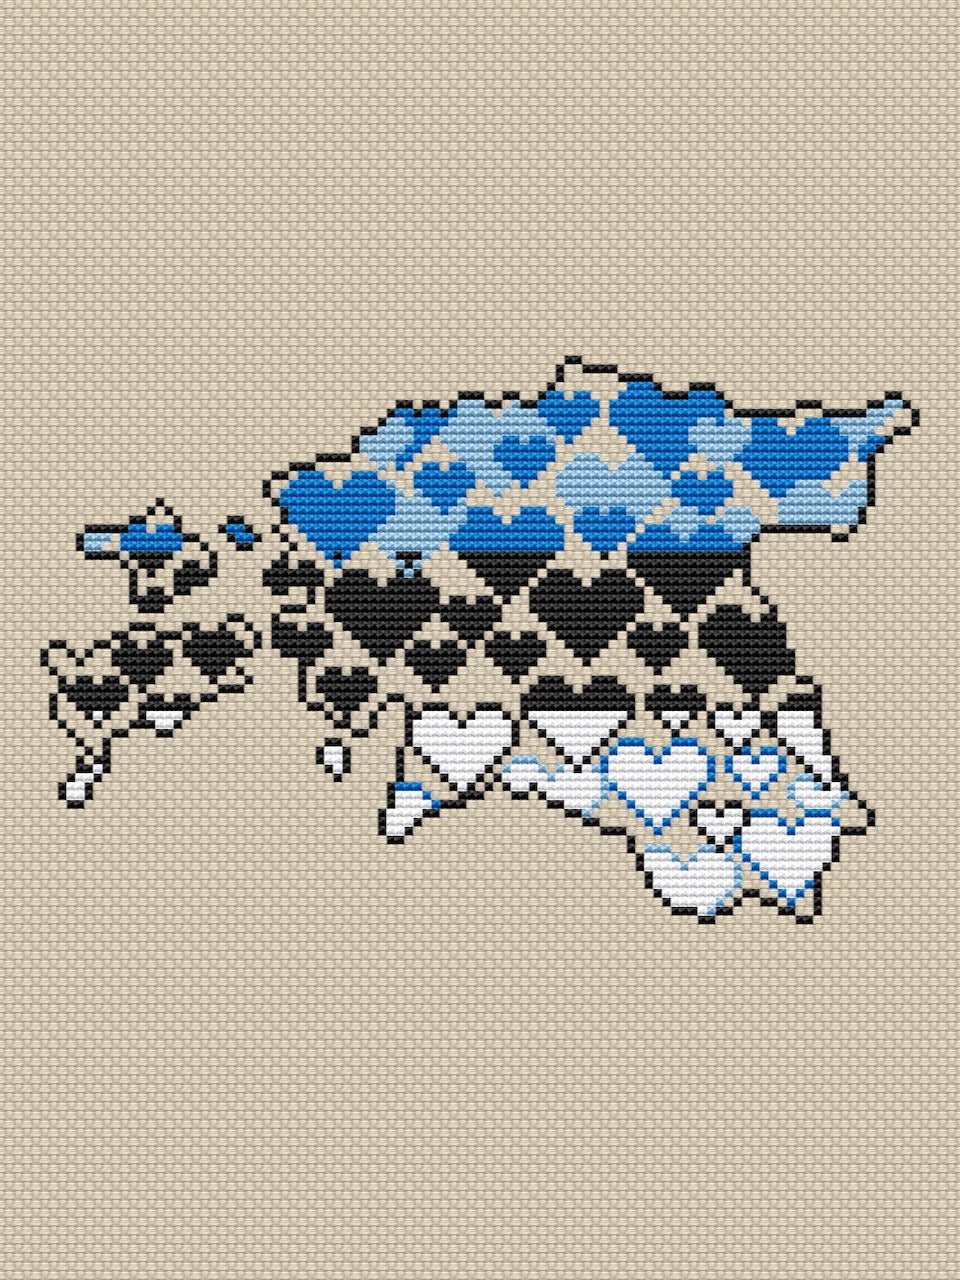 Estonia free cross stitch pattern